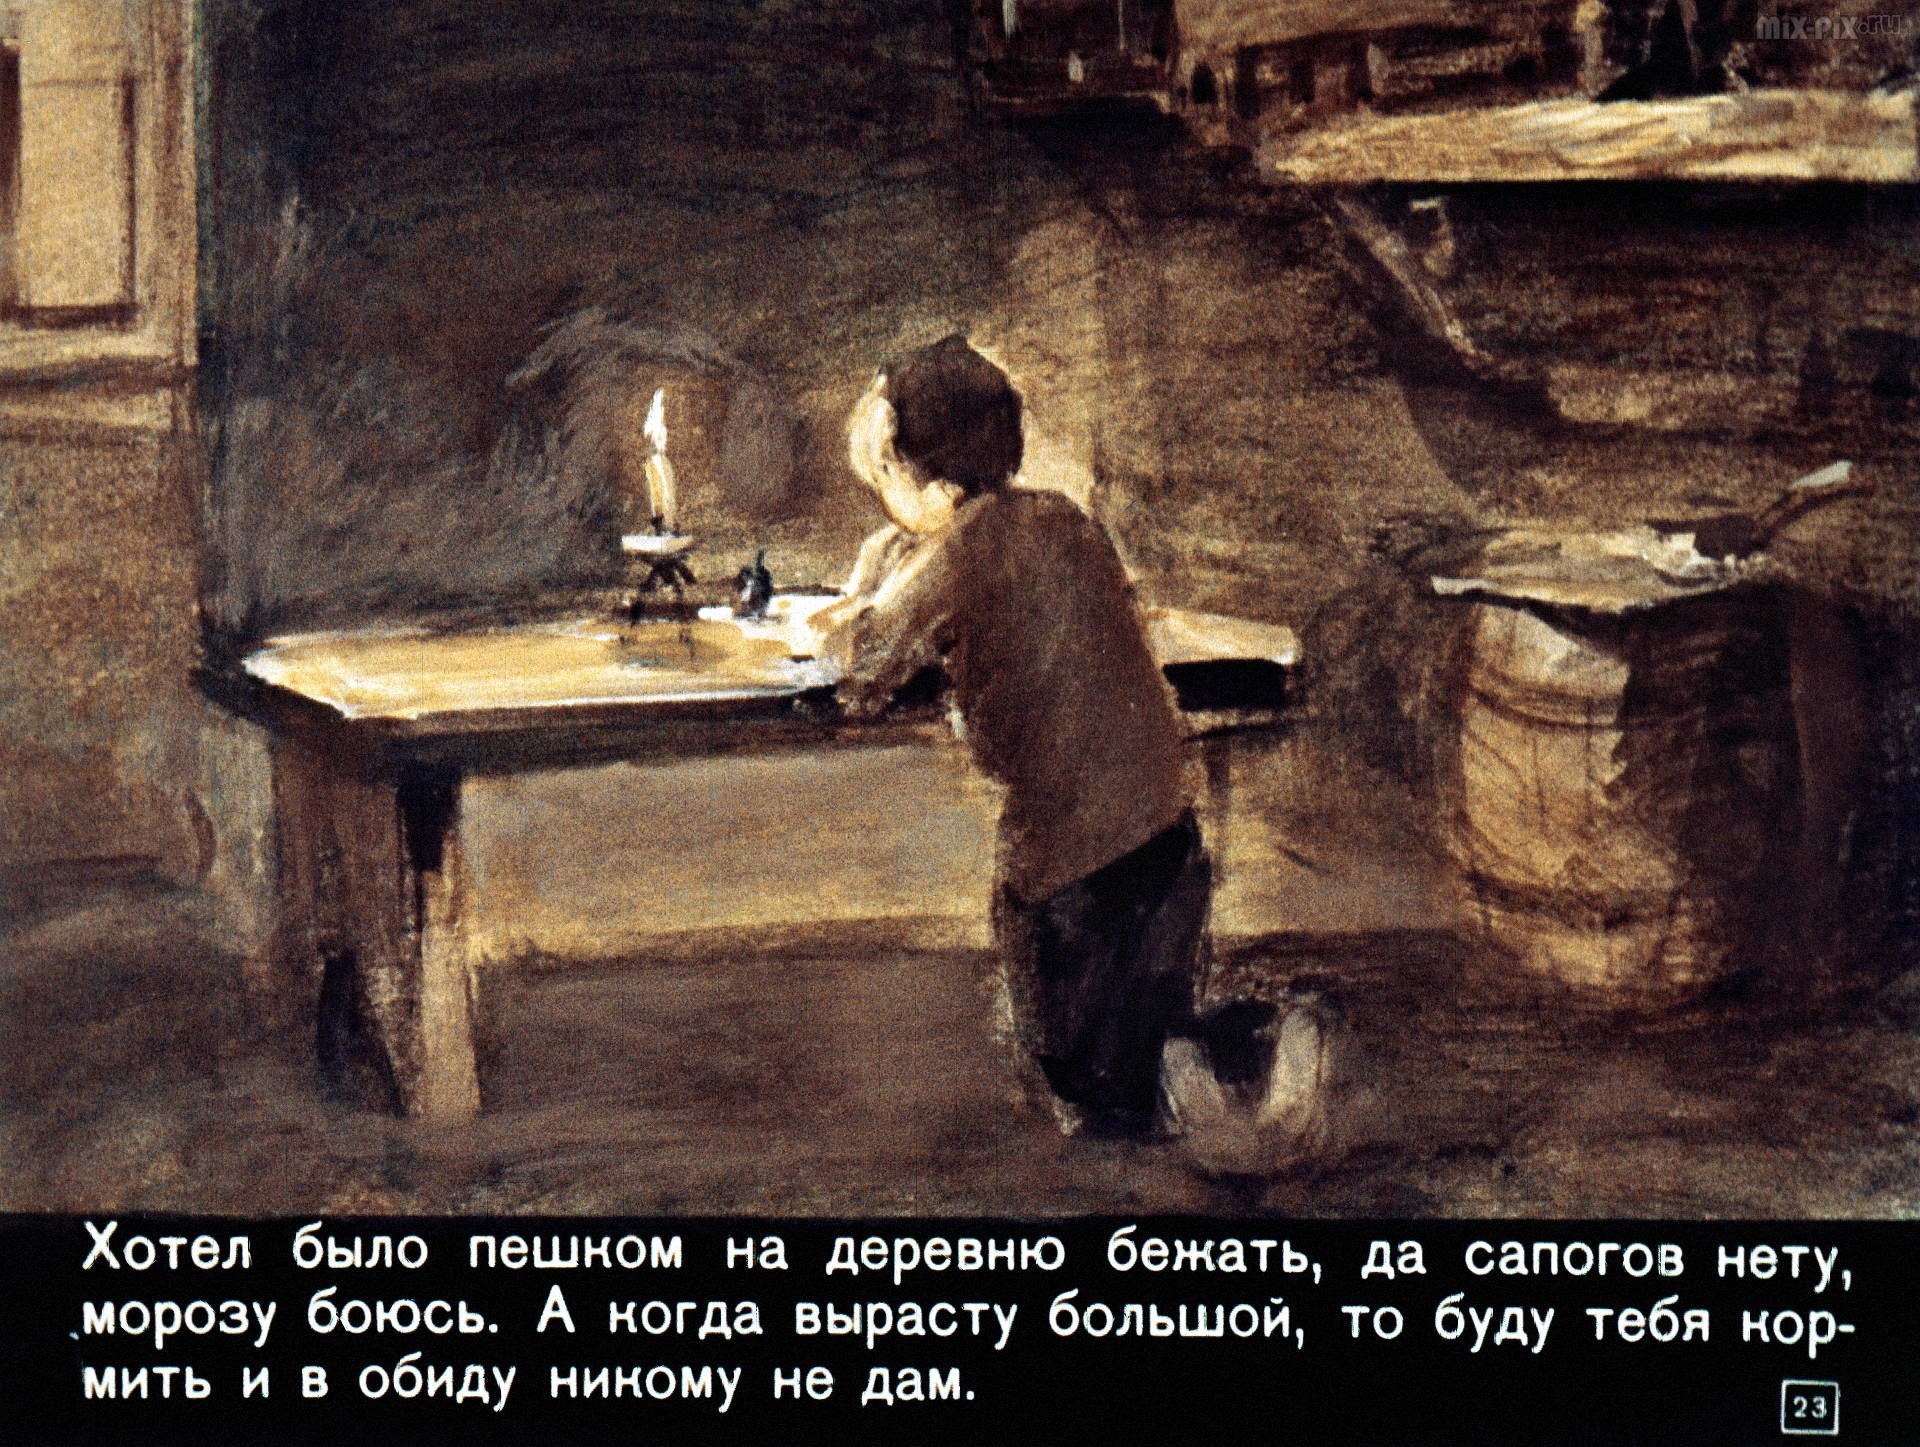 Иллюстрации к рассказу Чехова Ванька Жуков